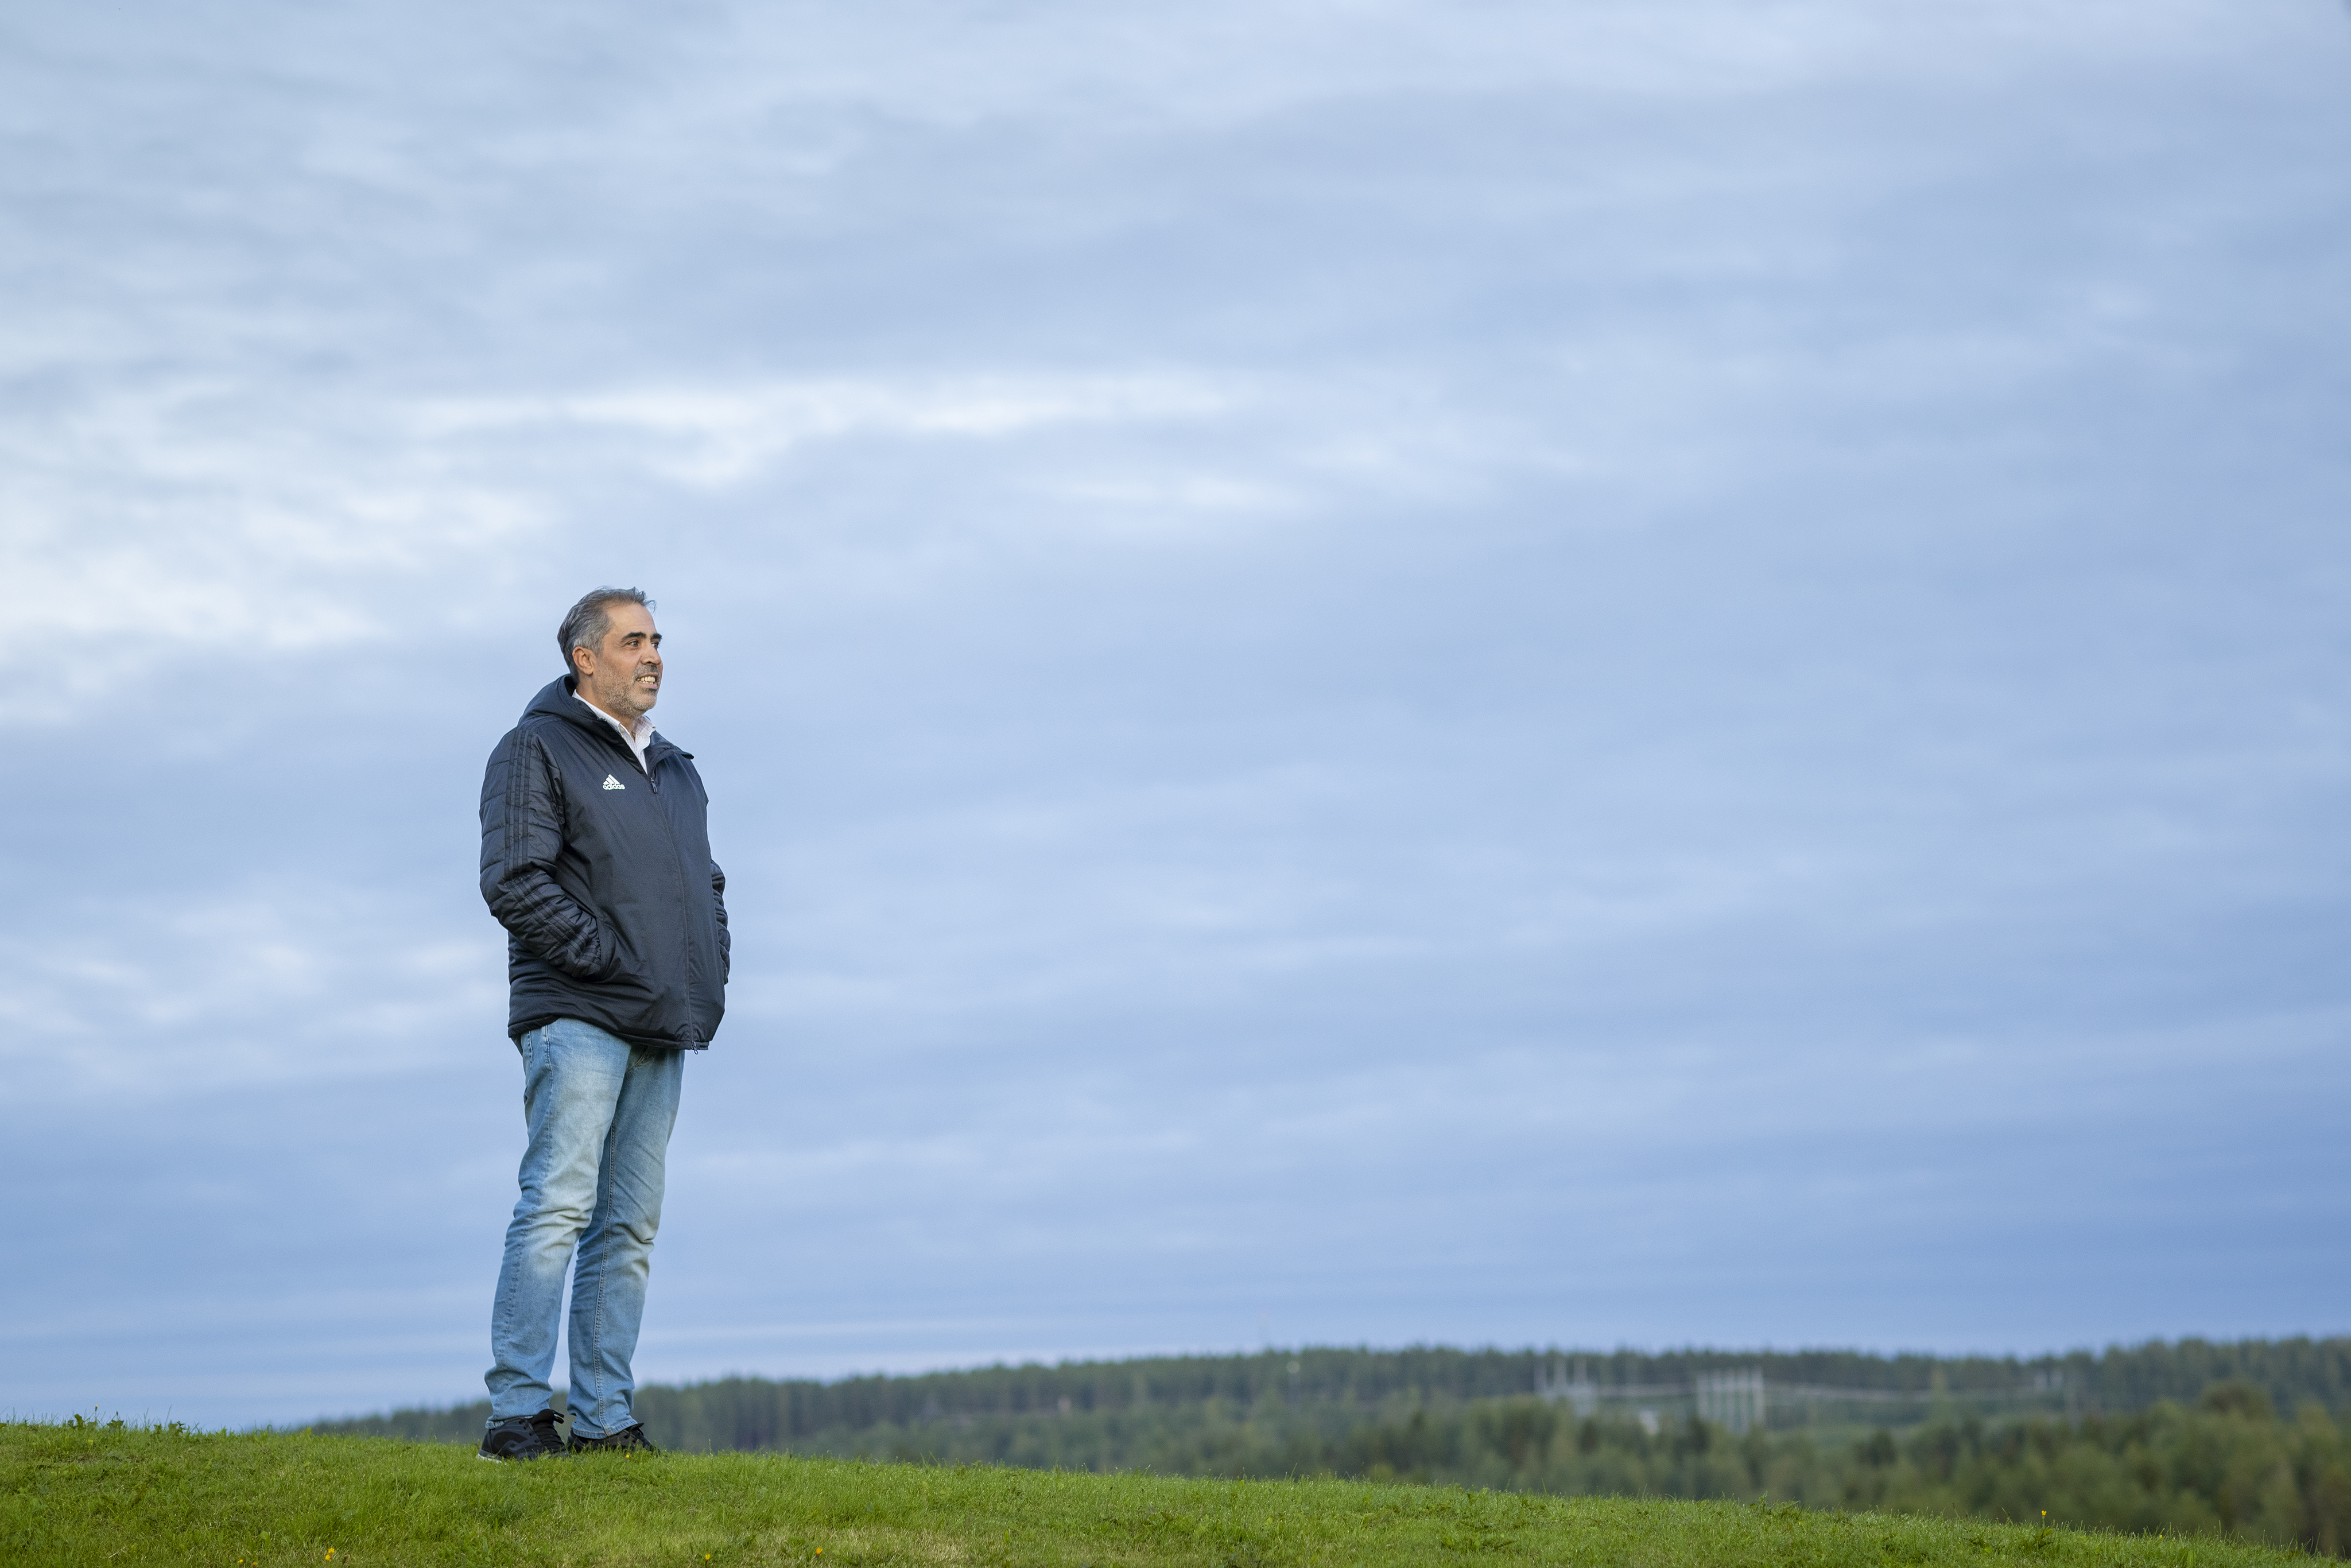 Framtidstro i Skellefteå efter Northvolts etablering ”Bästa i mitt liv att komma hit” Foto